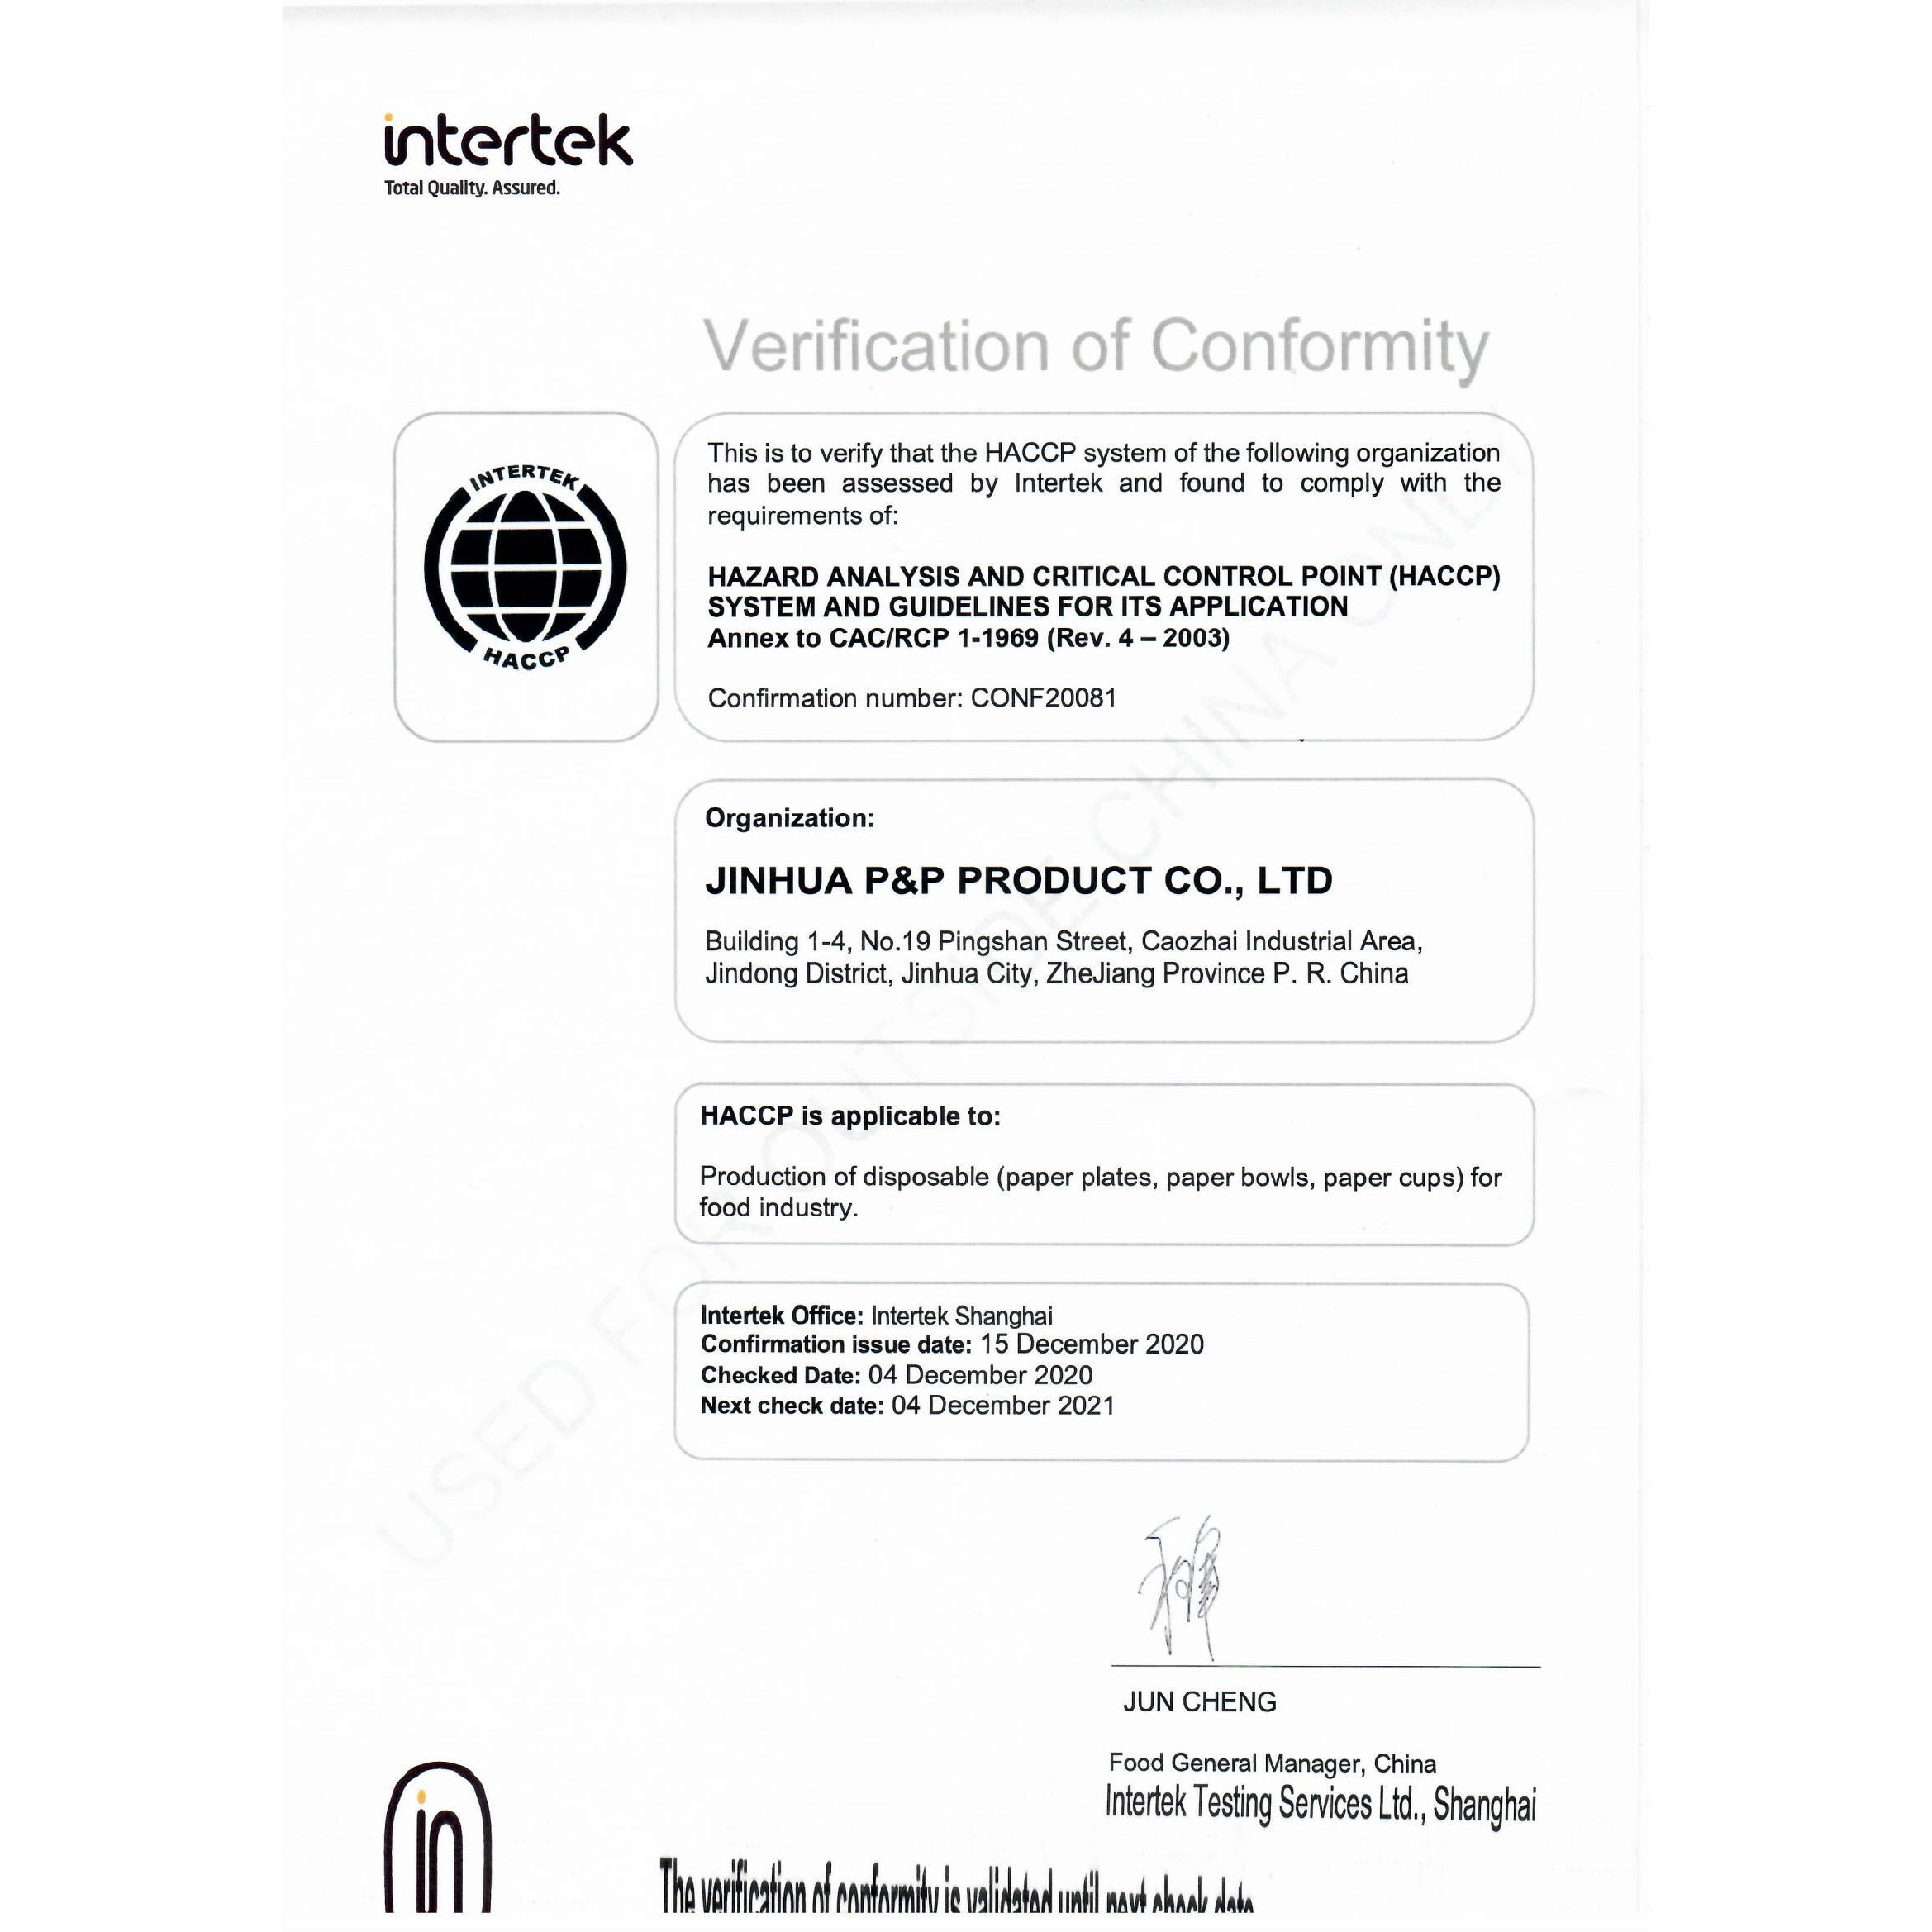 HACCP Verification of Conformity